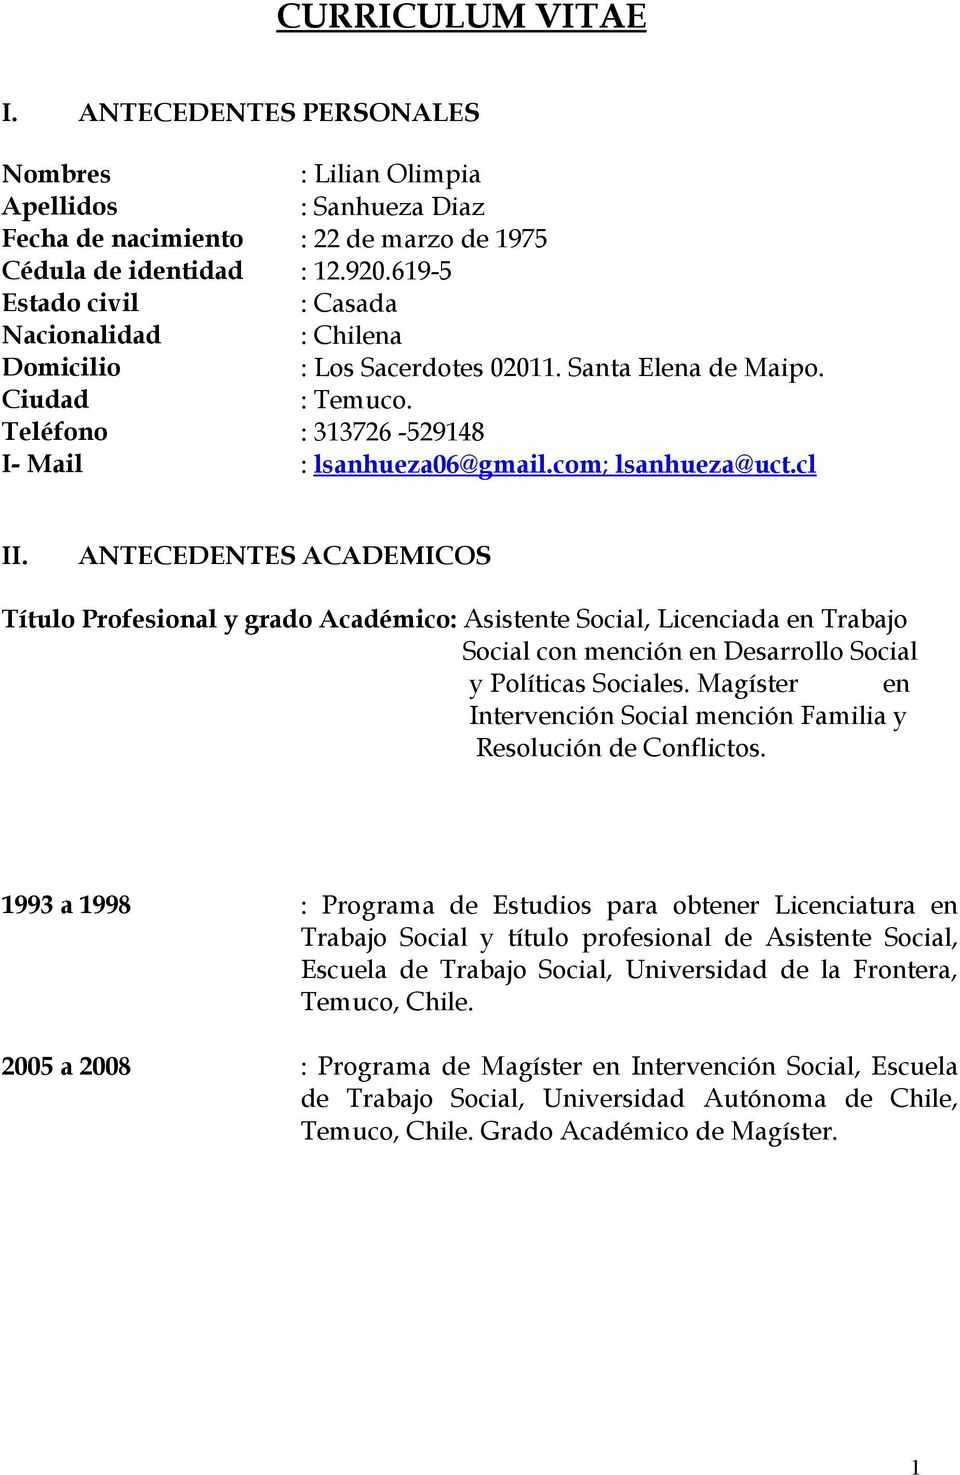 cl II. ANTECEDENTES ACADEMICOS Título Profesional y grado Académico: Asistente Social, Licenciada en Trabajo Social con mención en Desarrollo Social y Políticas Sociales.